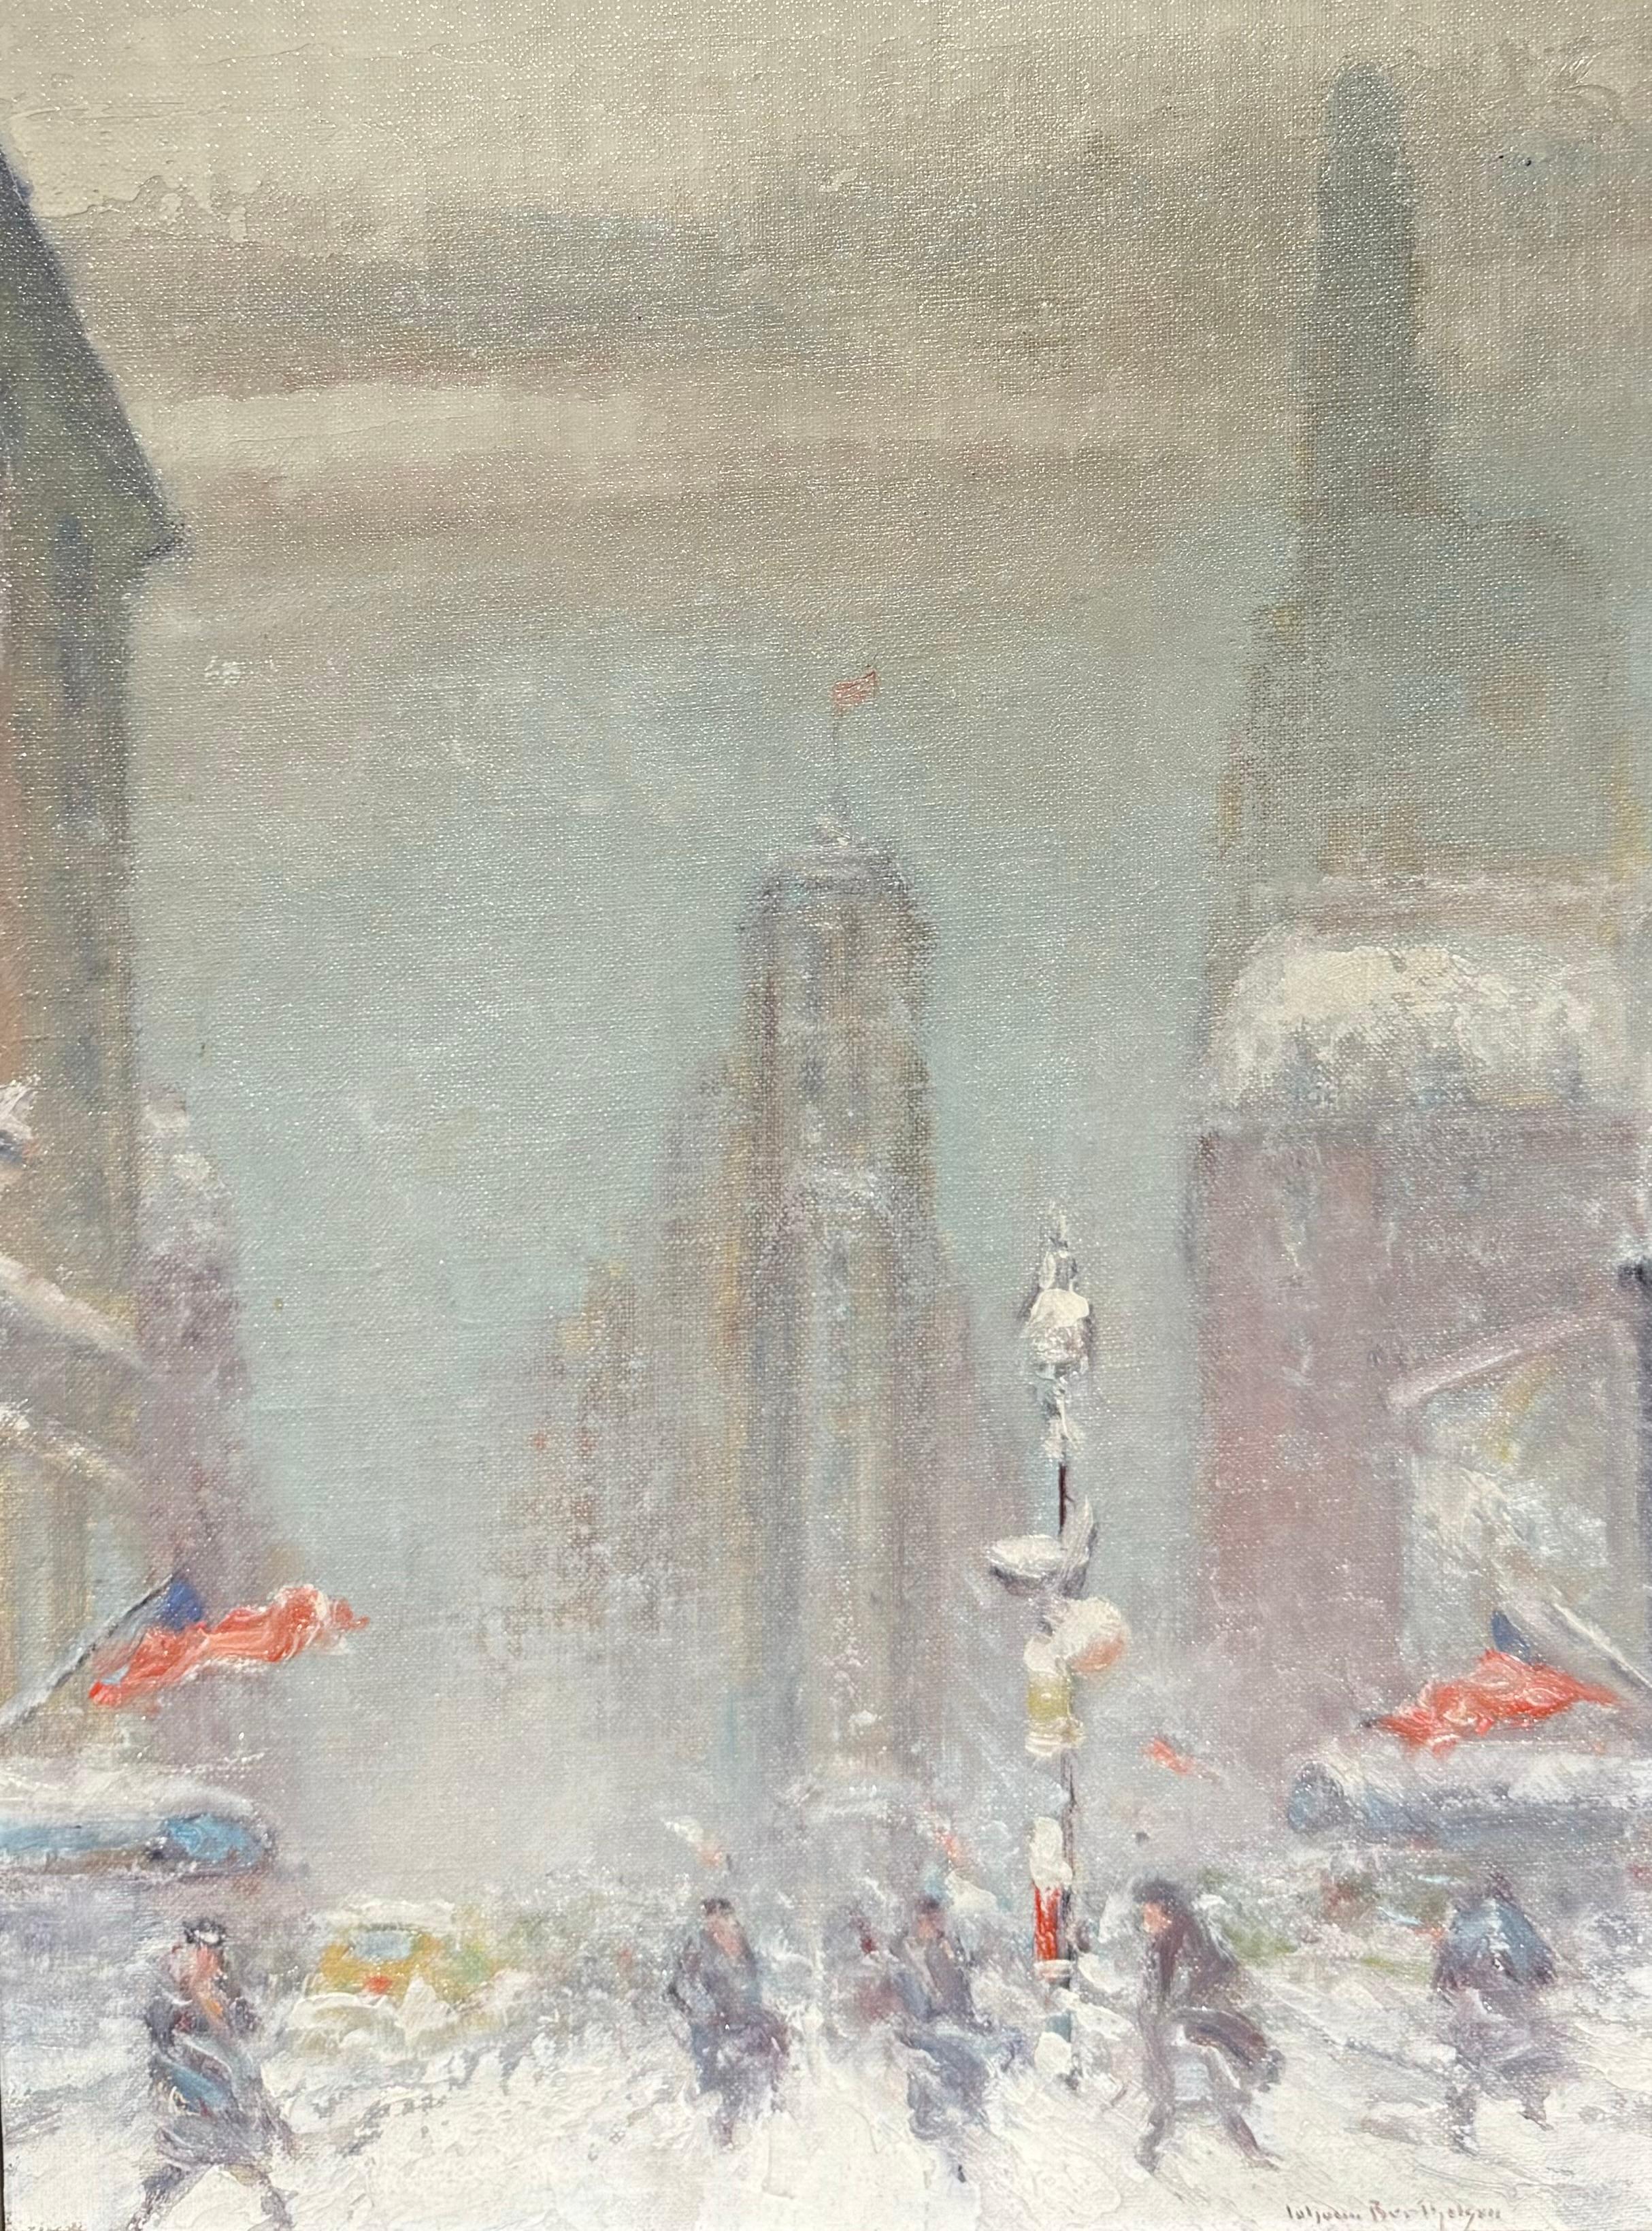 Peinture impressionniste américaine NYC FLATIRON Union Square  - Painting de Johann Berthelsen